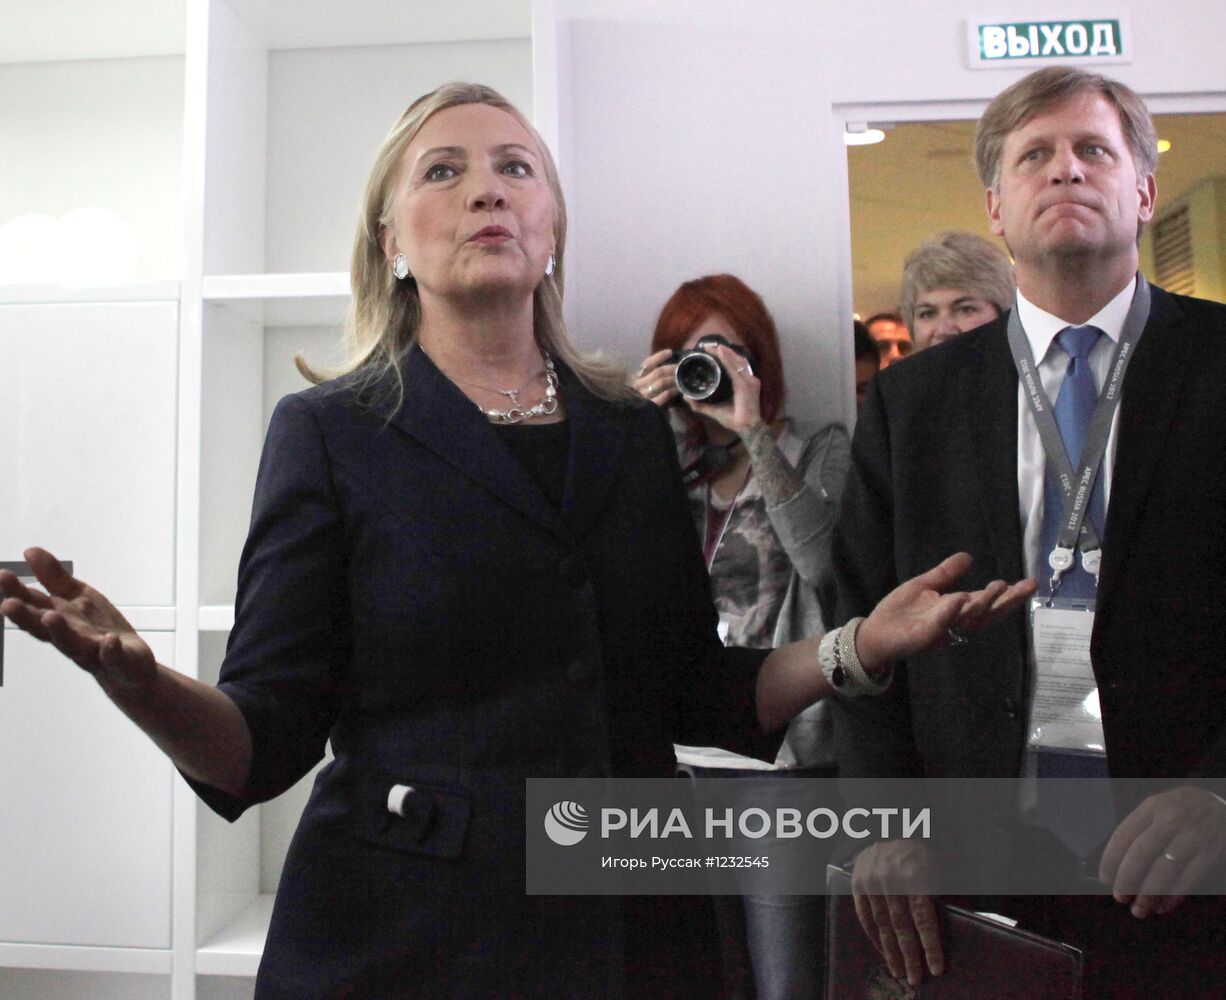 Х.Клинтон посетила офис "Молодежный" Сбербанка во Владивостоке